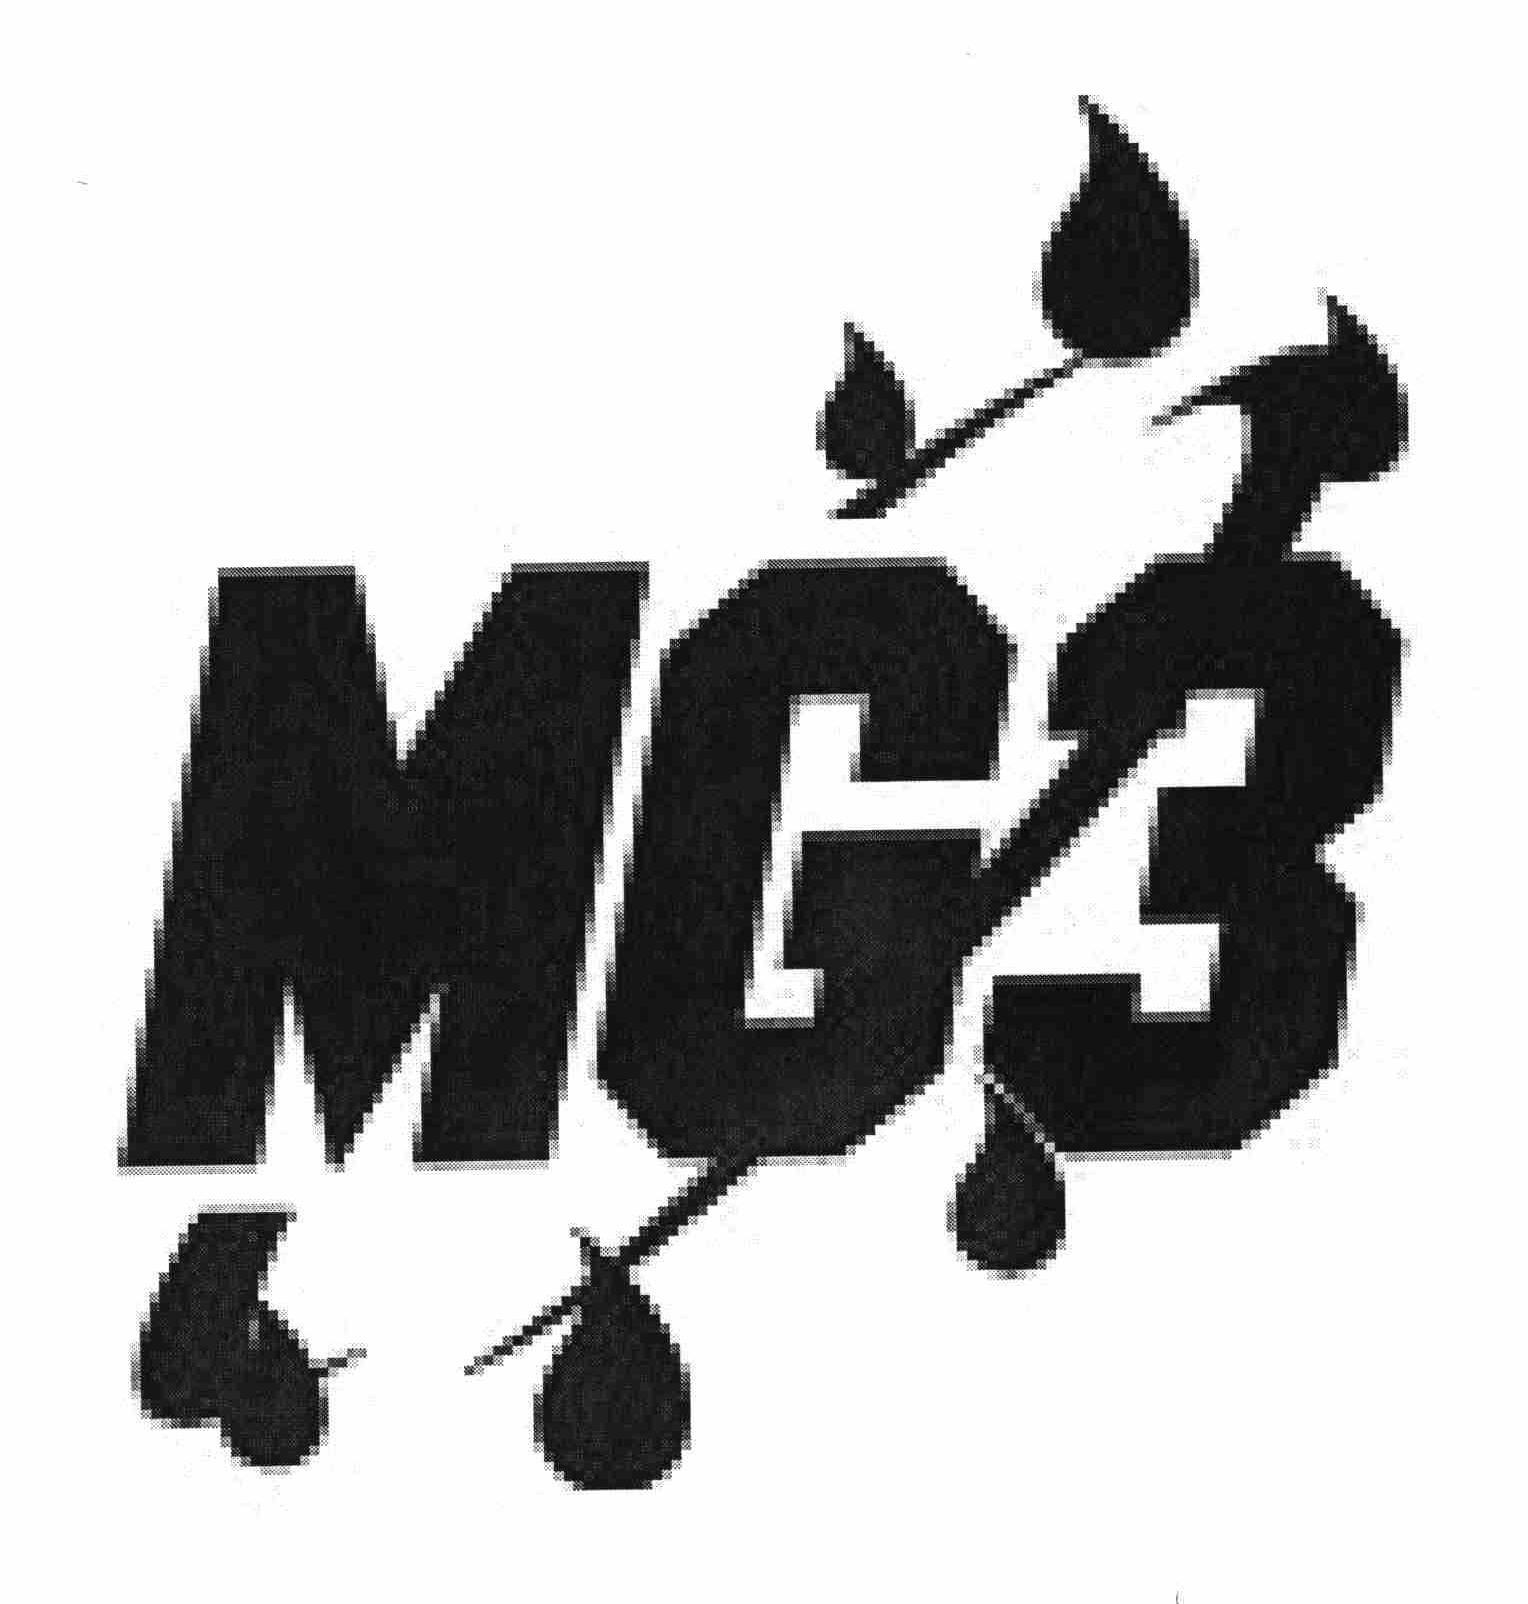  MG3